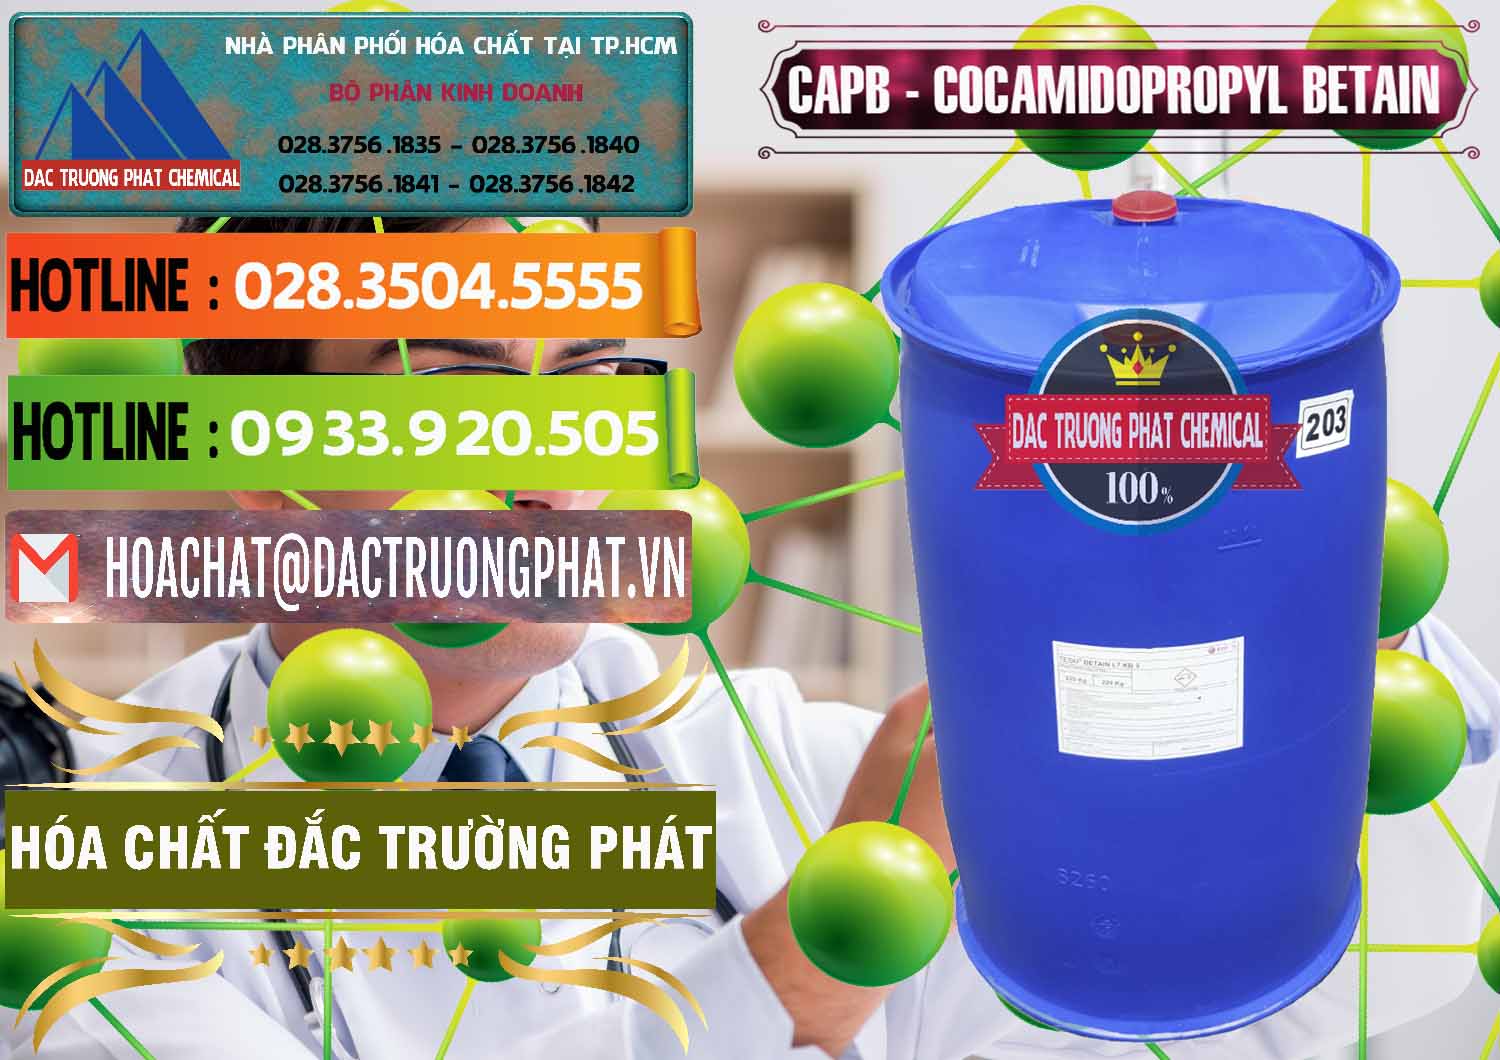 Nơi chuyên cung cấp & bán Cocamidopropyl Betaine - CAPB Tego Indonesia - 0327 - Công ty phân phối và cung cấp hóa chất tại TP.HCM - cungcaphoachat.com.vn